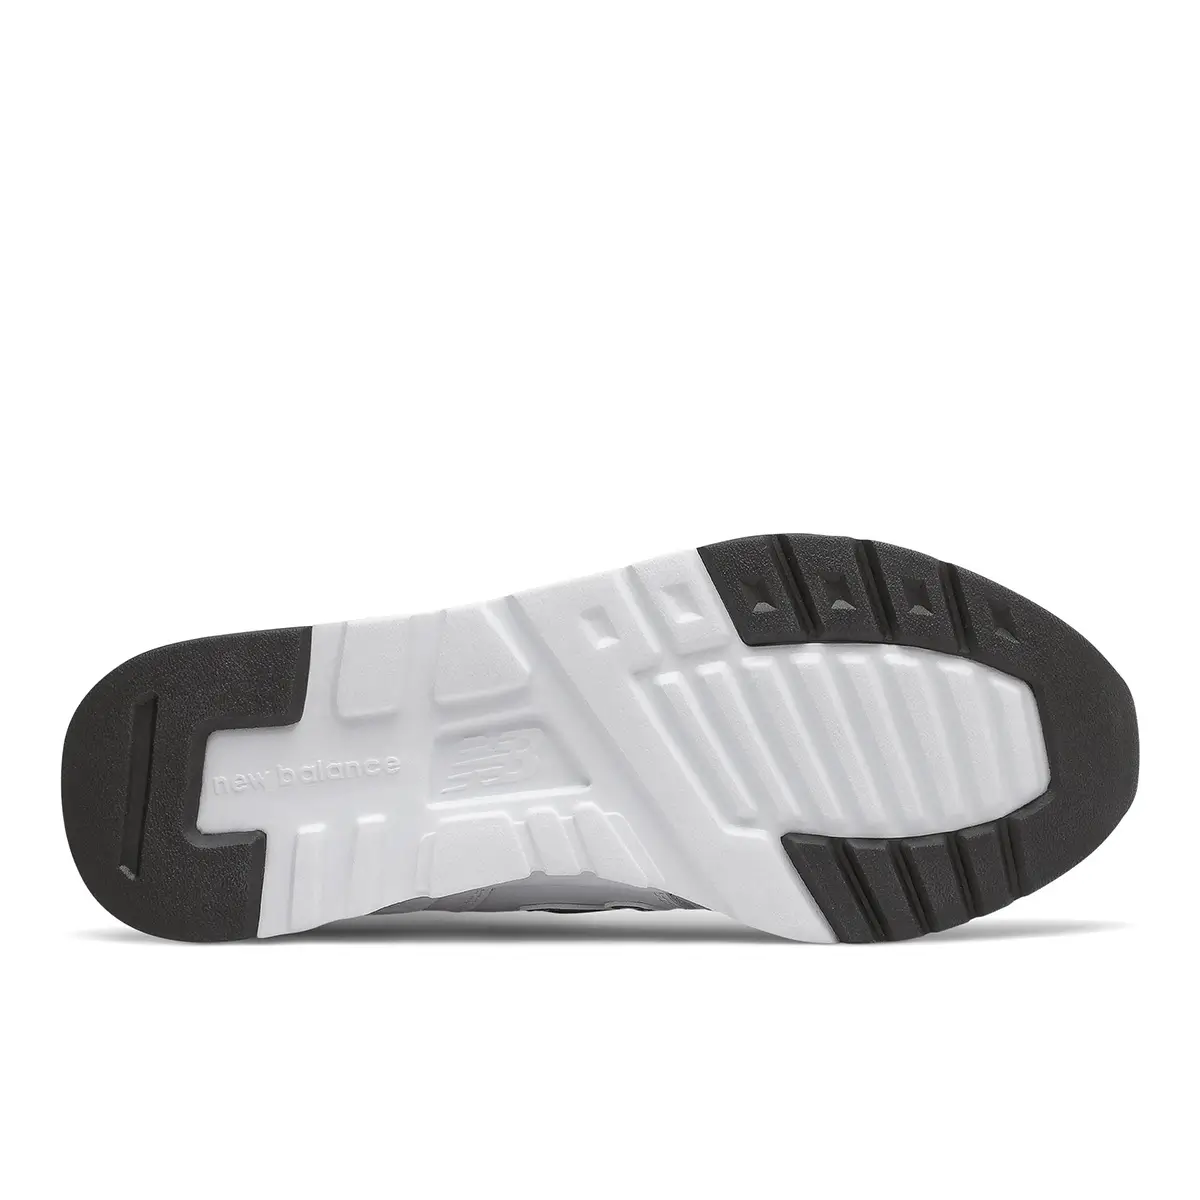 New Balance 997 Beyaz Kadın Günlük Ayakkabı - CW997HSS